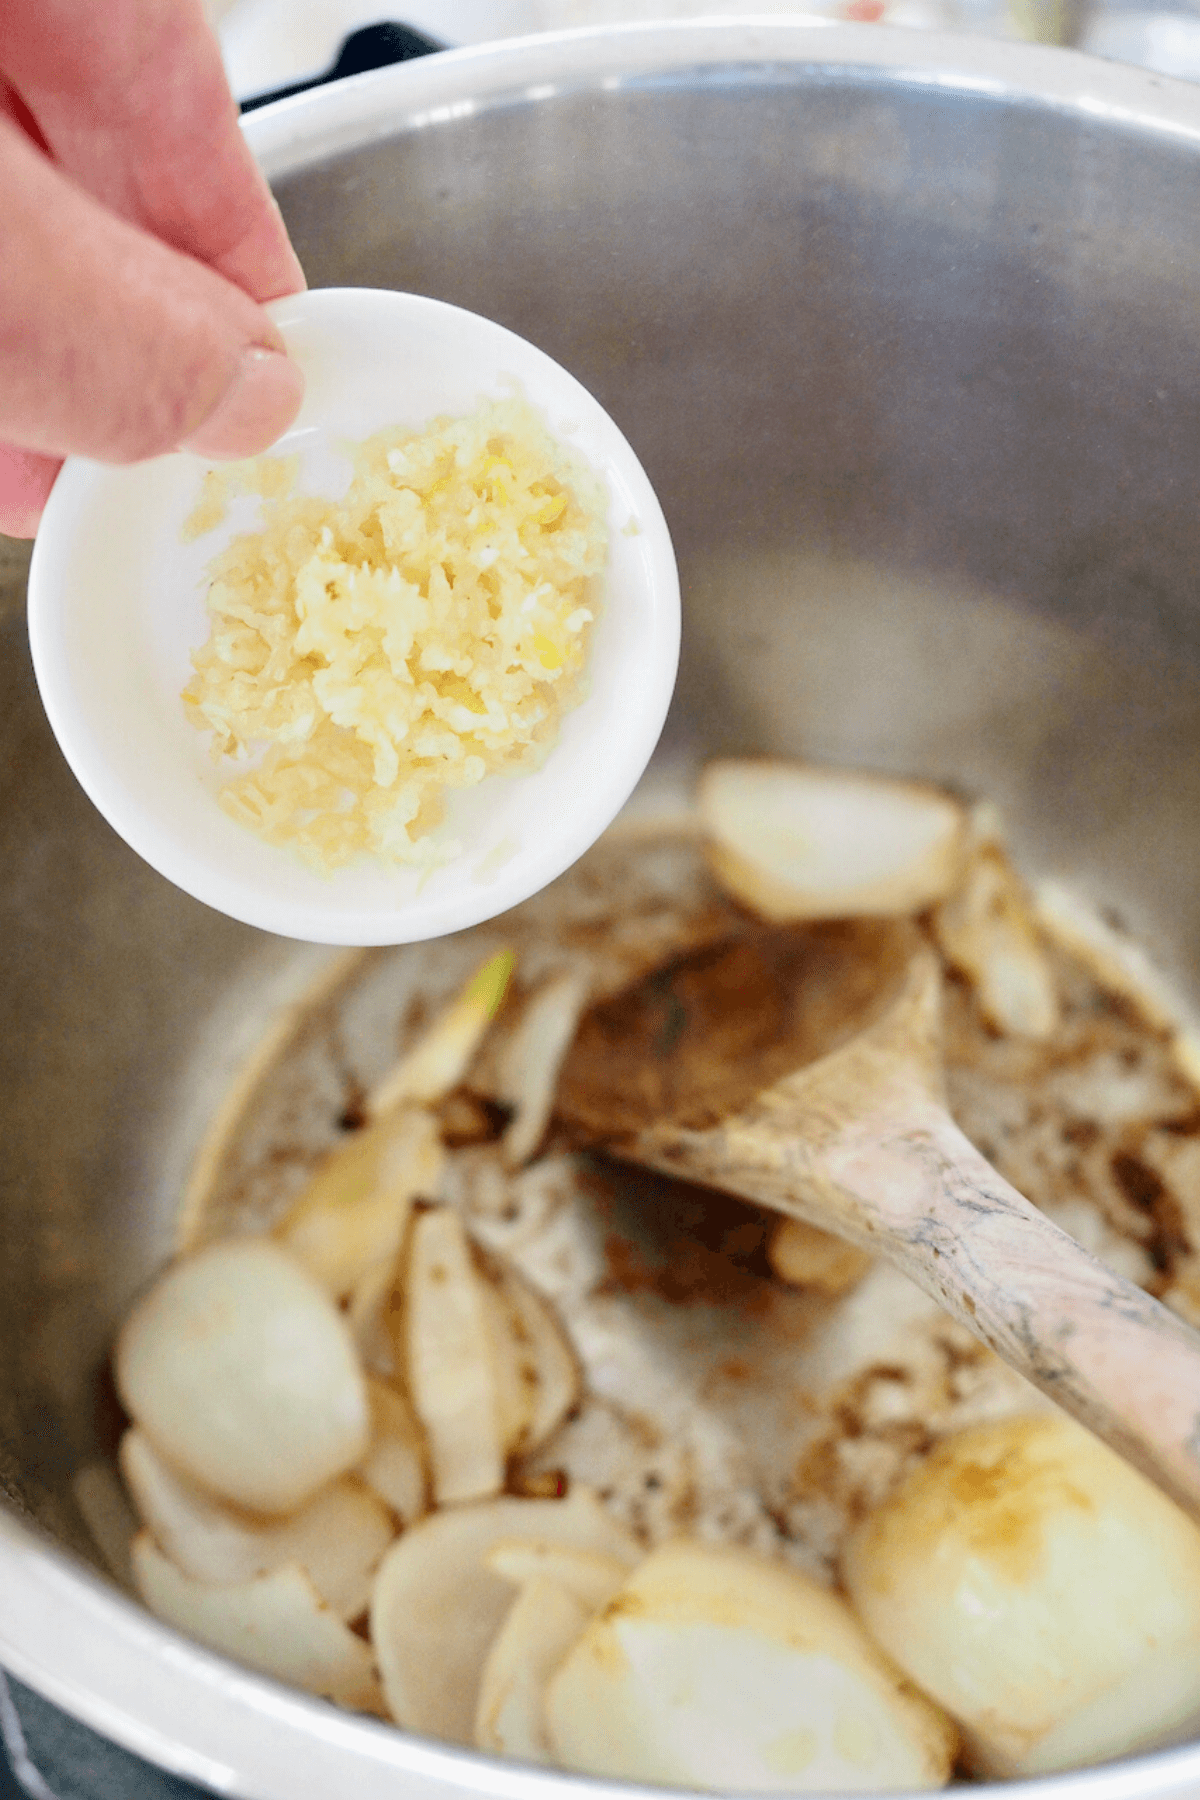 Add garlic and stir until fragrant. 